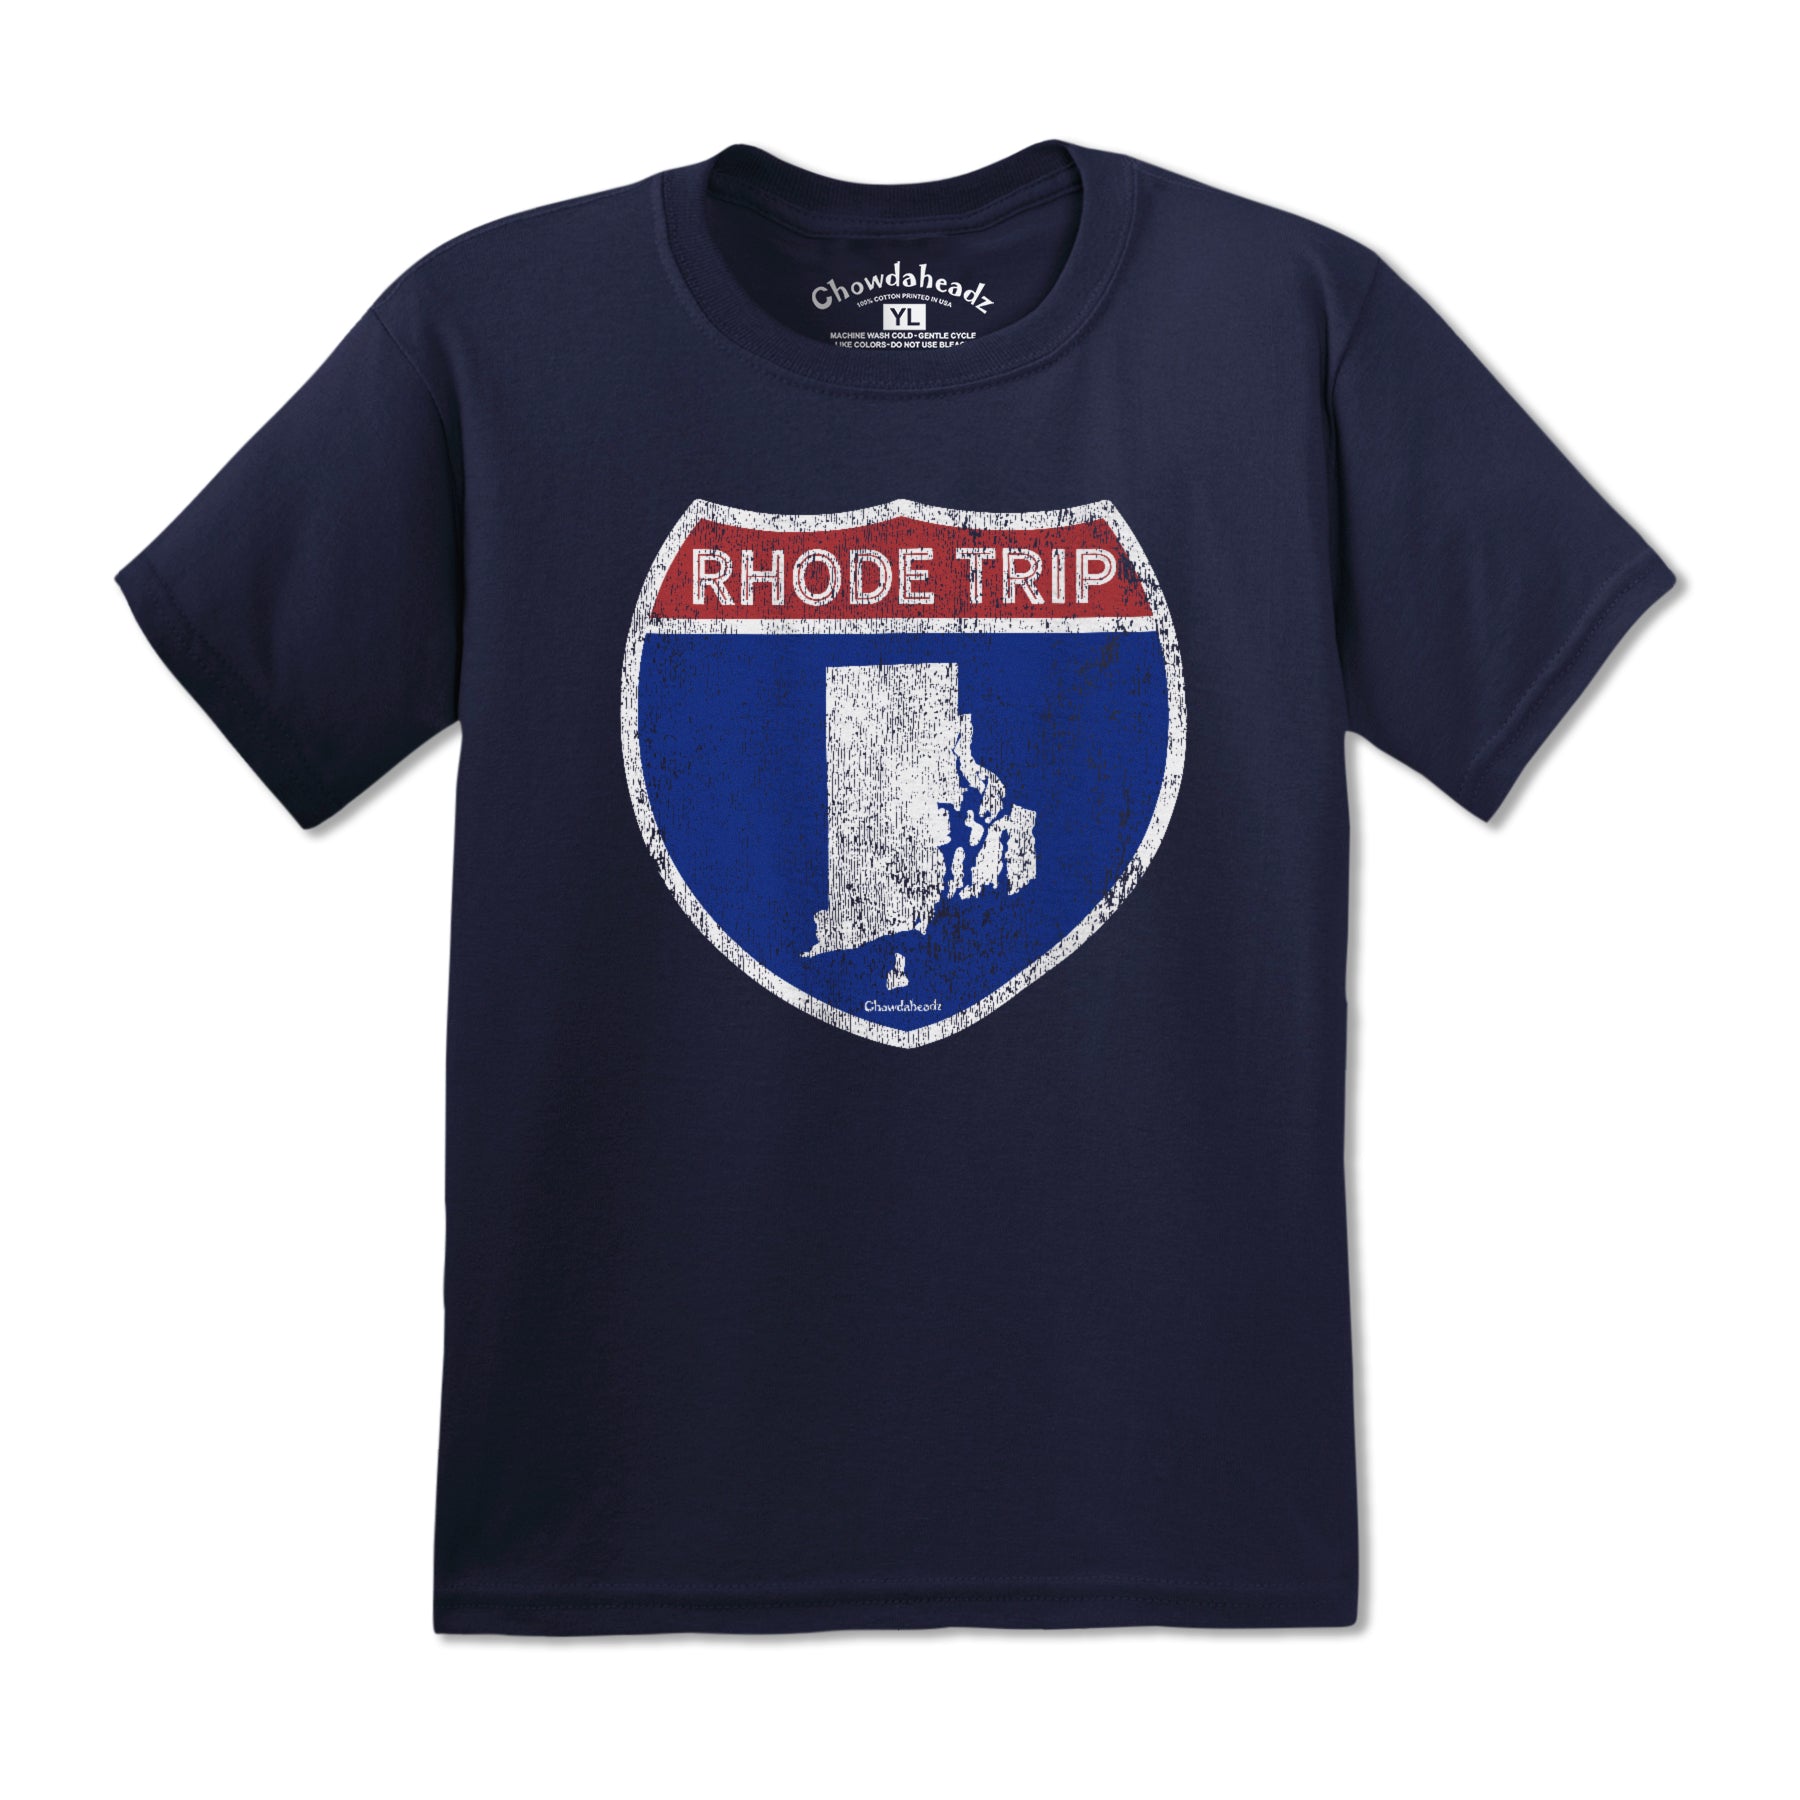 Rhode Trip Youth T-shirt - Chowdaheadz